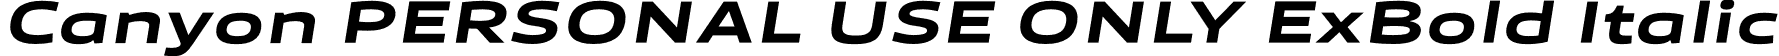 Canyon PERSONAL USE ONLY ExBold Italic font | CanyonPersonalUseOnlyExtraboldItalic-DOye0.otf